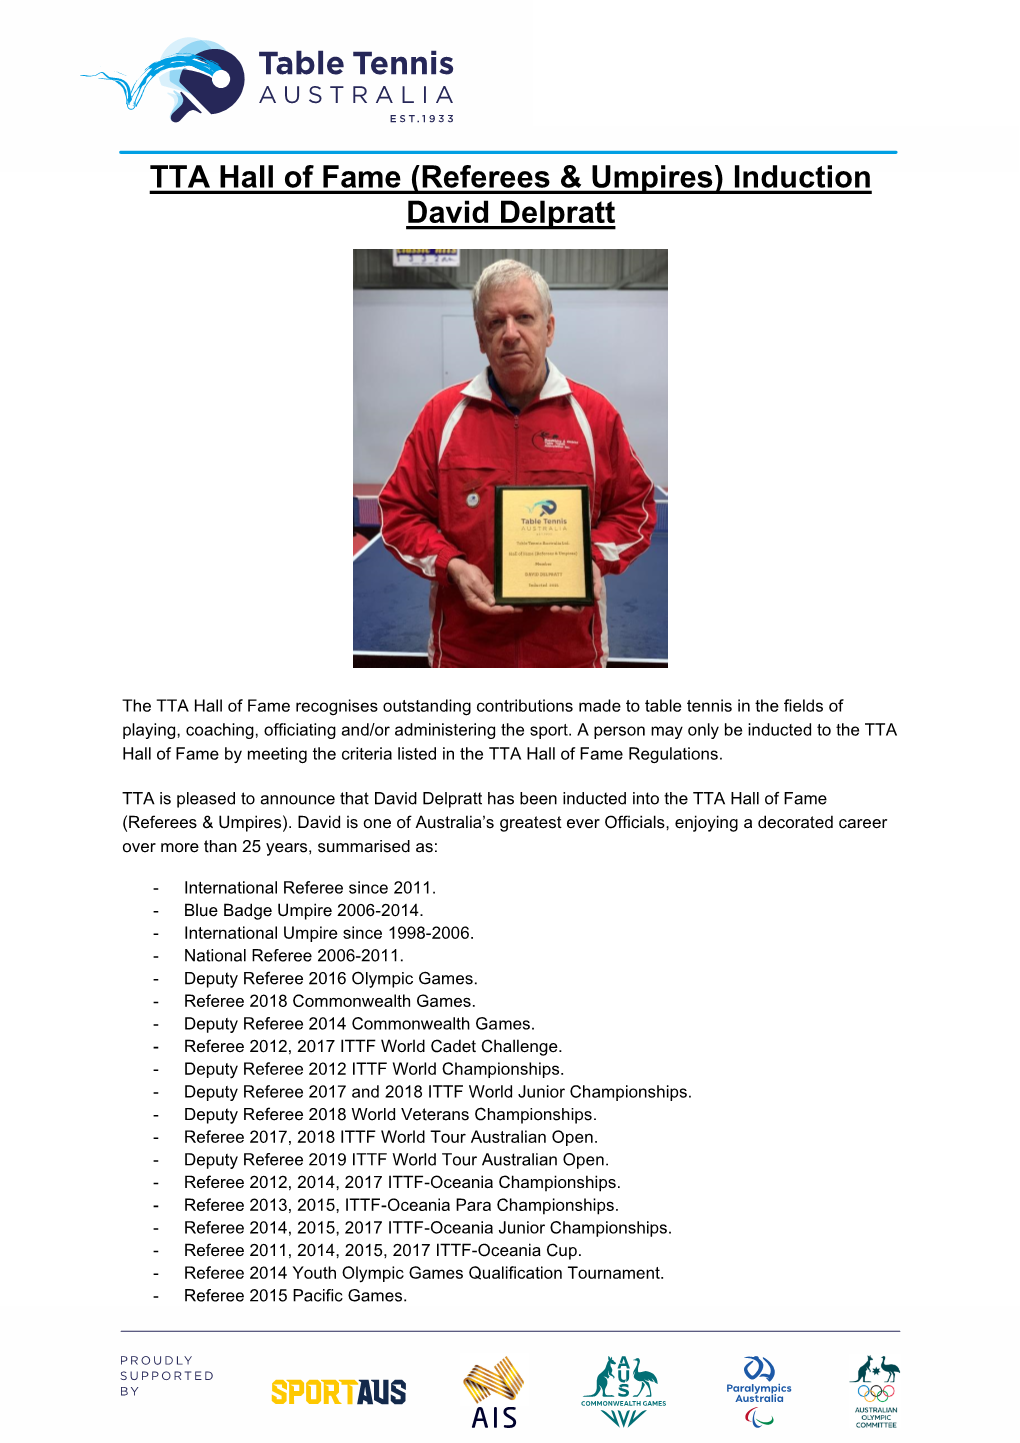 TTA Hall of Fame (Referees & Umpires) Induction David Delpratt